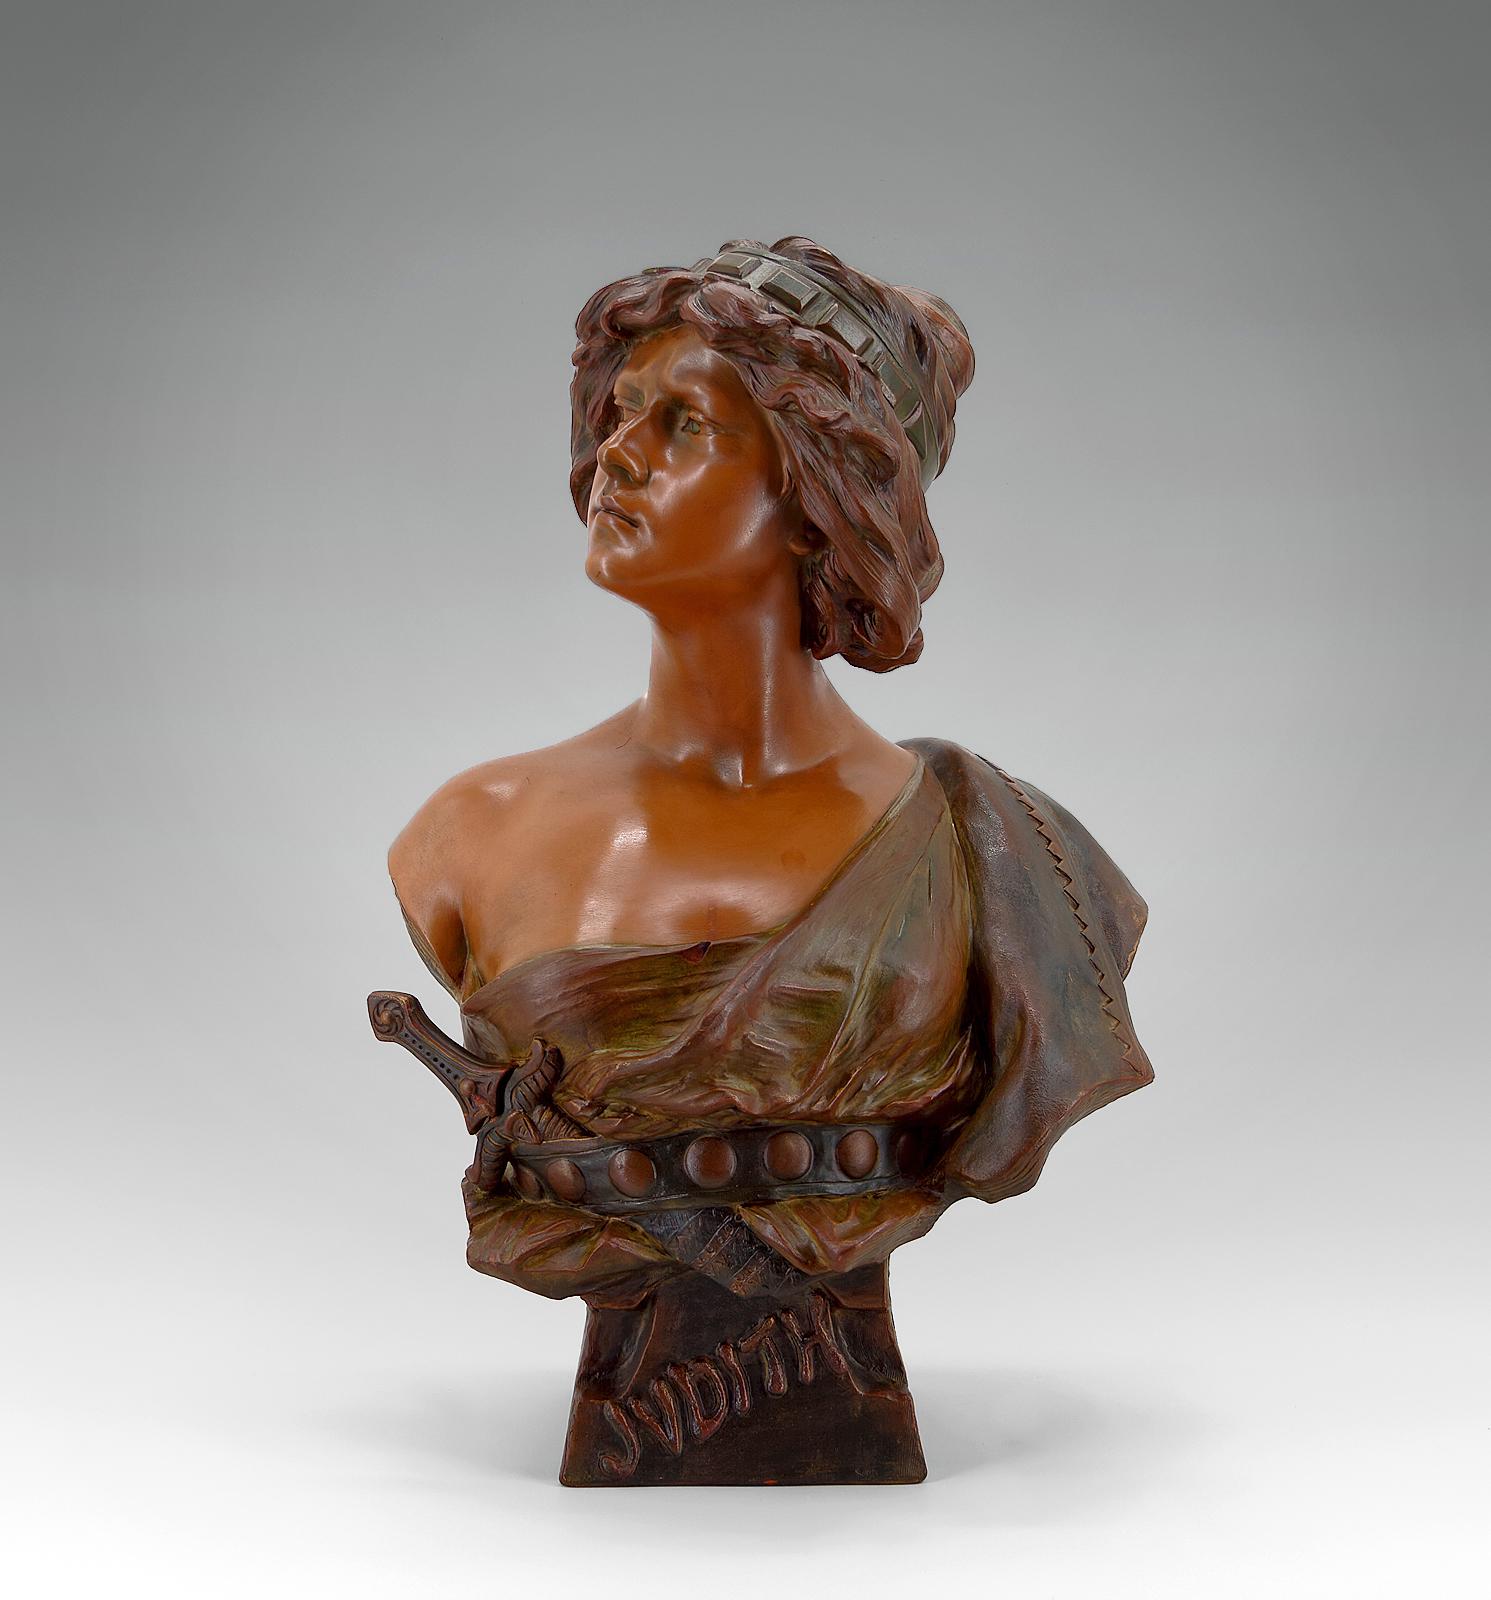 Superbe buste en terre cuite polychrome représentant une femme de l'Antiquité au regard fier portant un poignard. 
Une sculpture de belle qualité, que ce soit au niveau de la coiffure, du visage, du drapé des vêtements et de la dague.
Nous